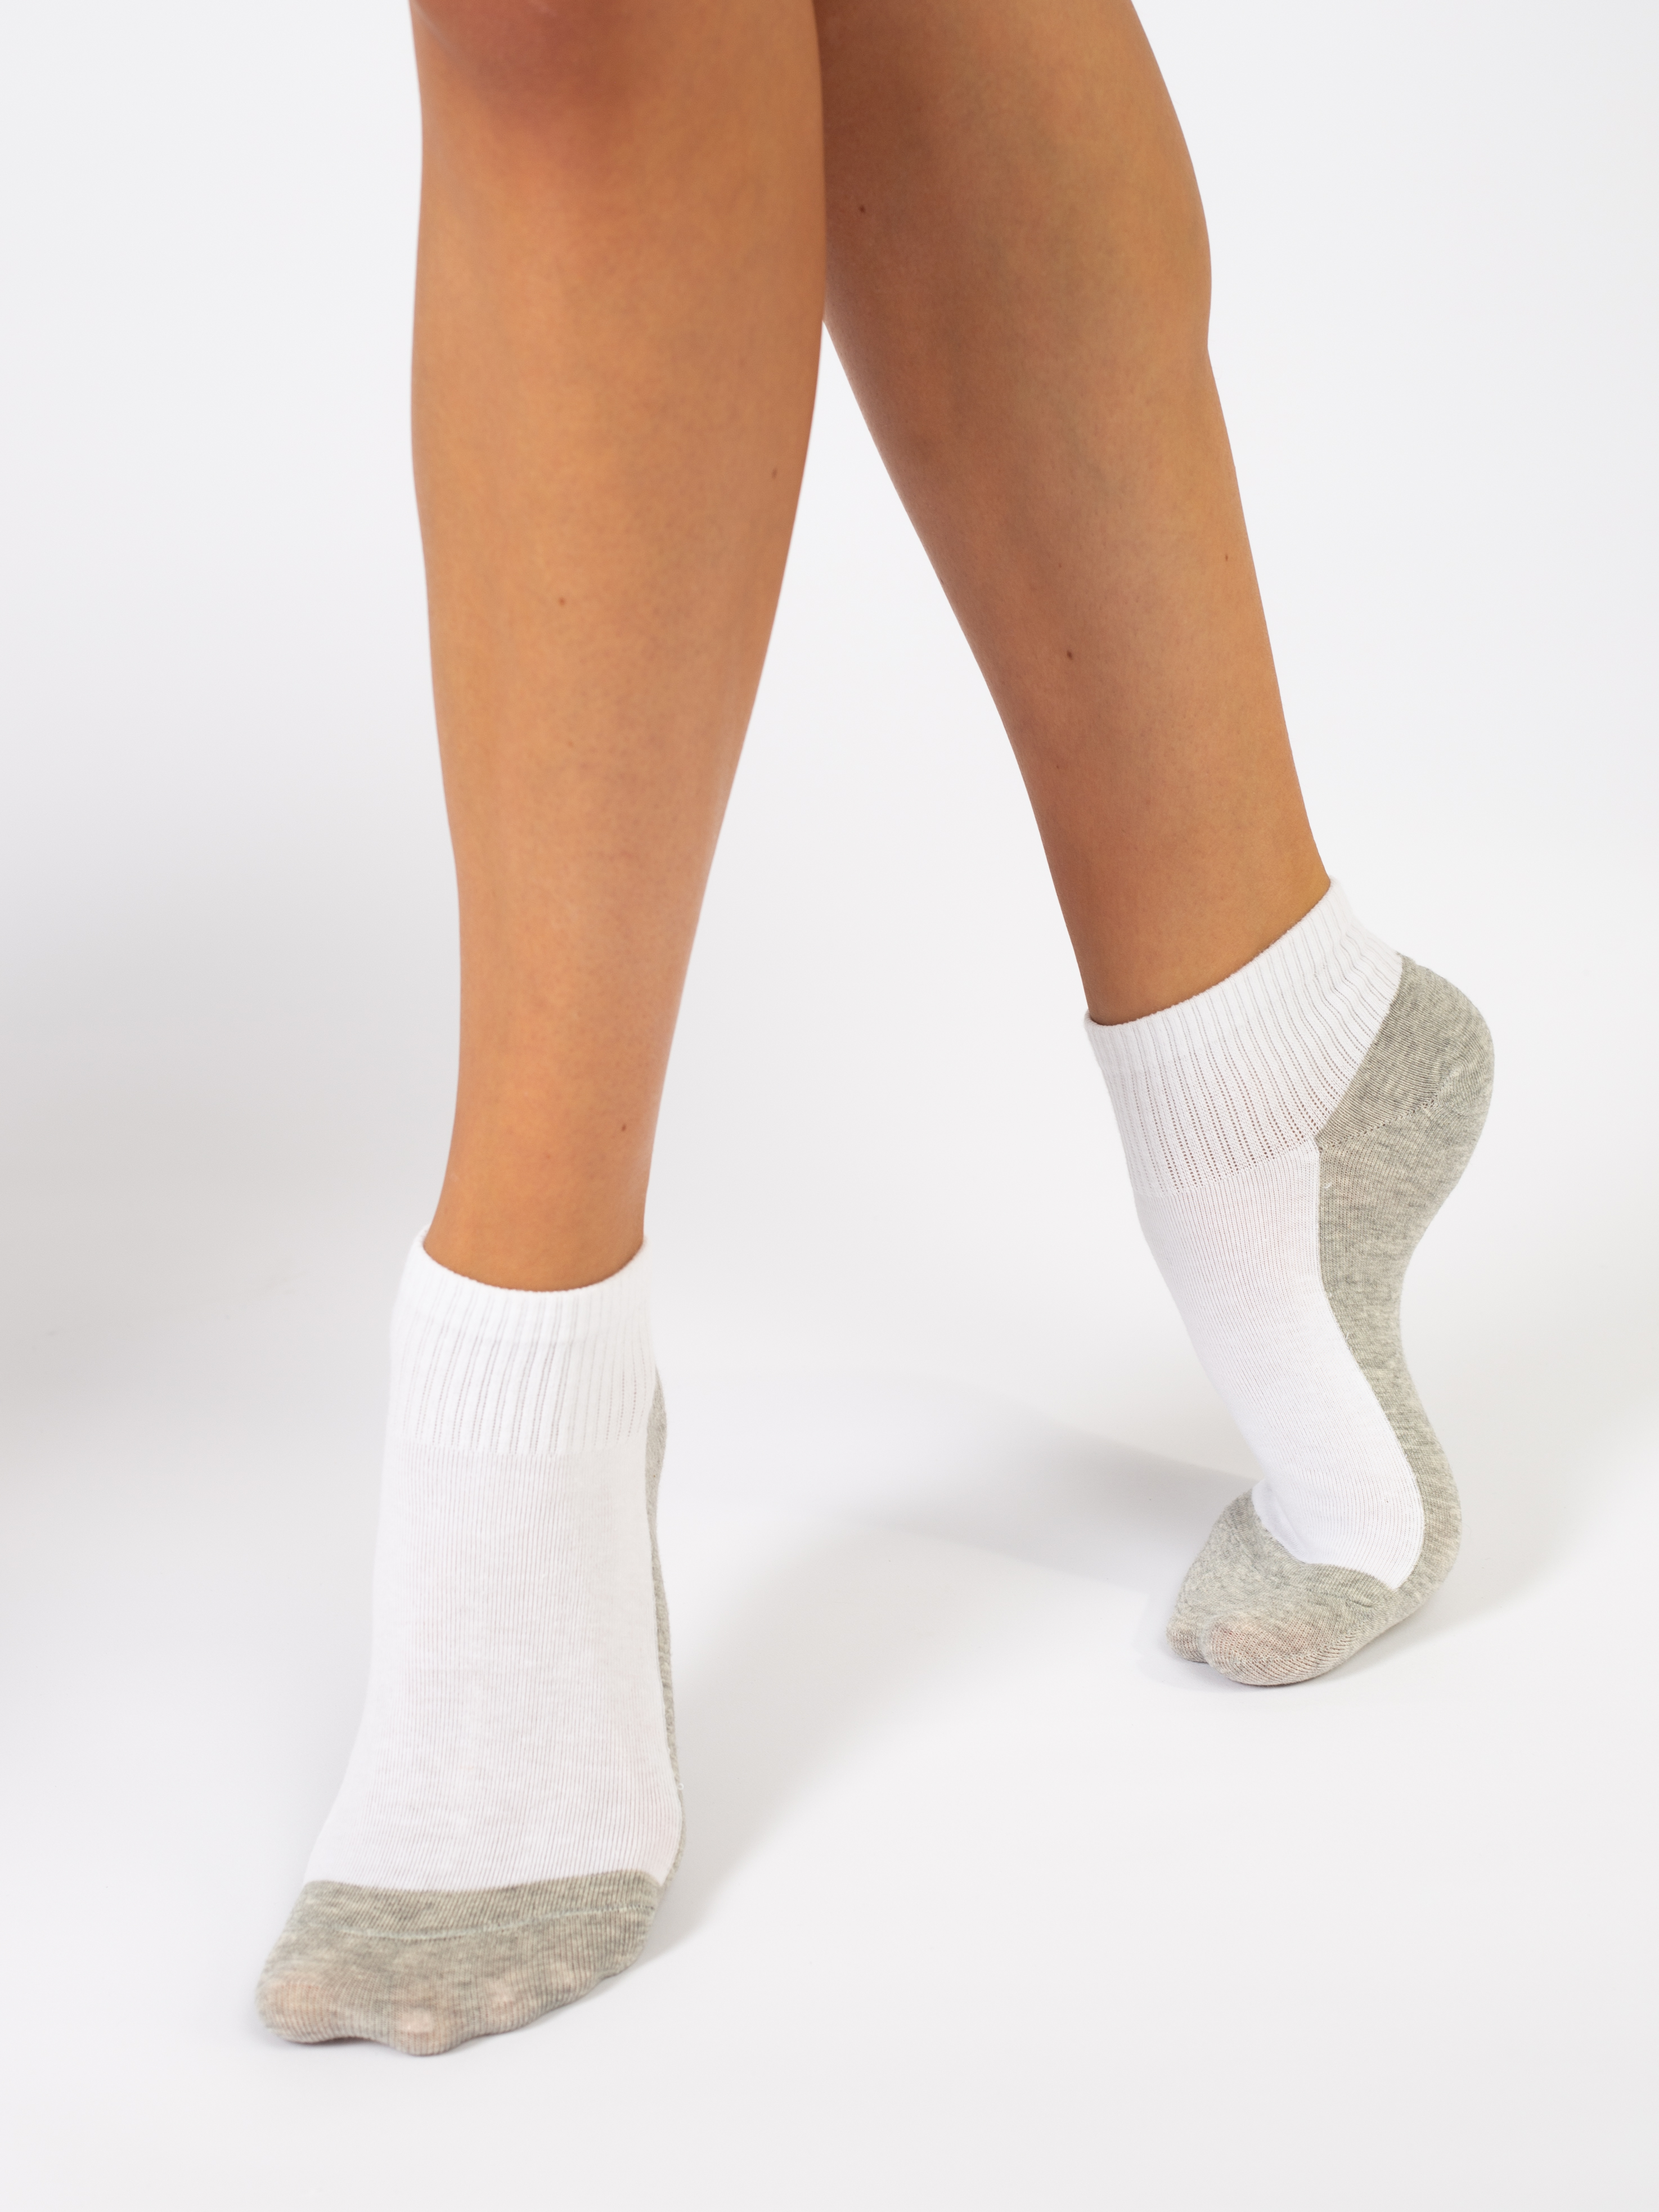 Комплект носков женских К-БС-1024 белых 36-41, 10 пар